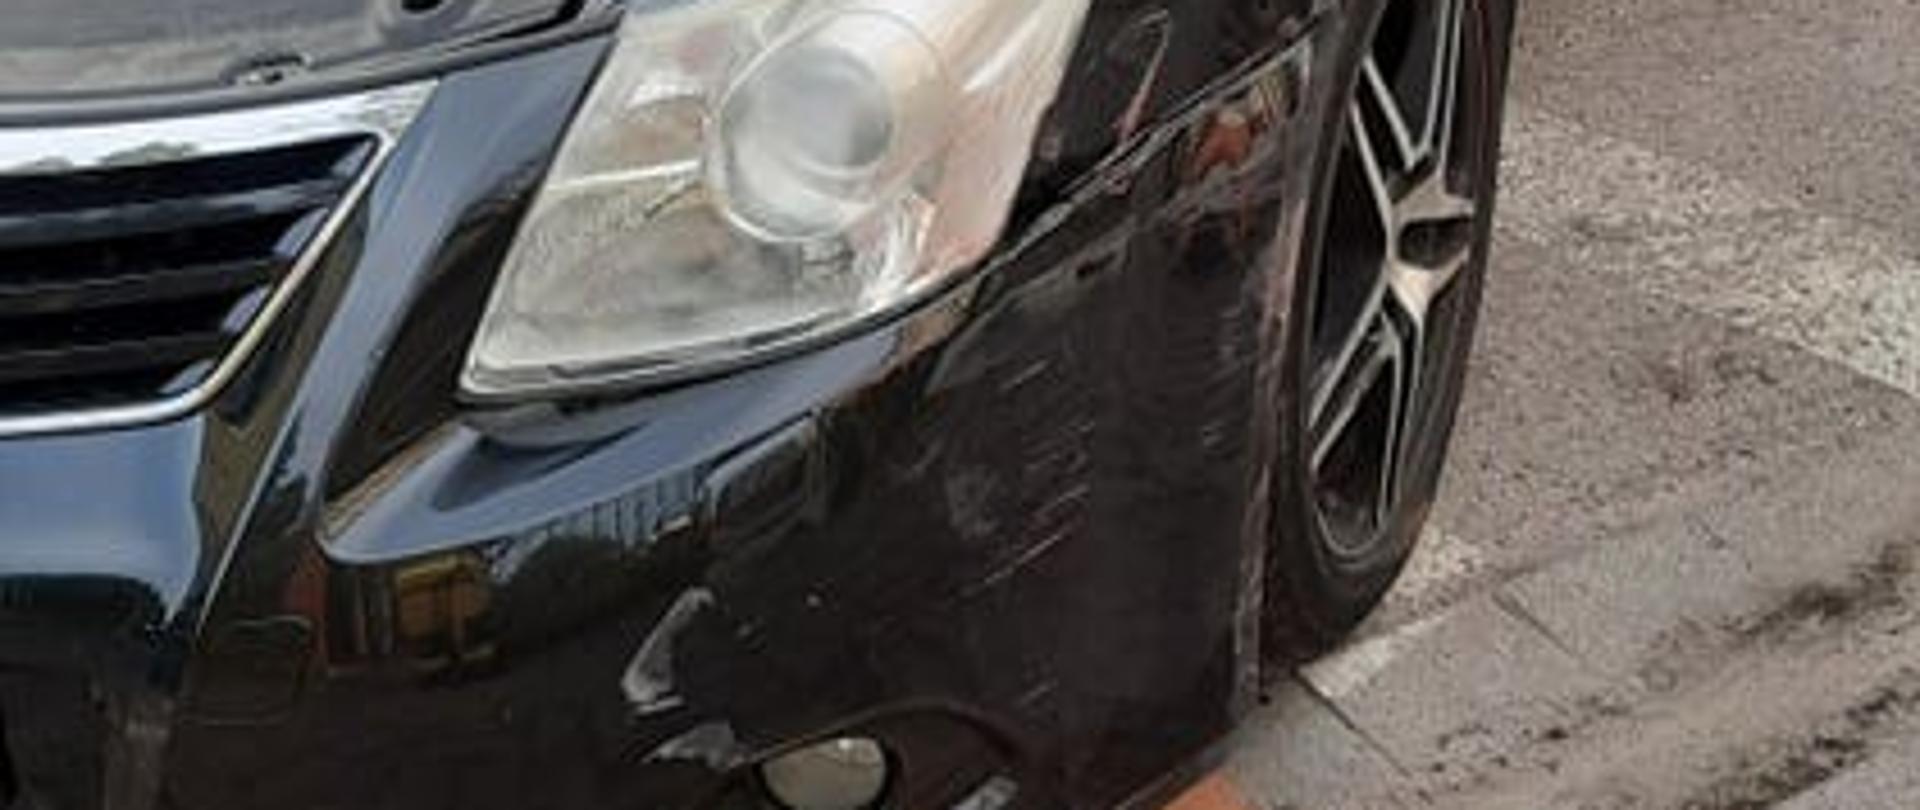 Zdjęcie przedstawia uszkodzony zderzak czarnego samochodu marki Toyota Avensis podczas kolizji na ul. Zamoyskiego w Białogardzie. Pojazd prezentowany od przodu z otwartą maskę silnika